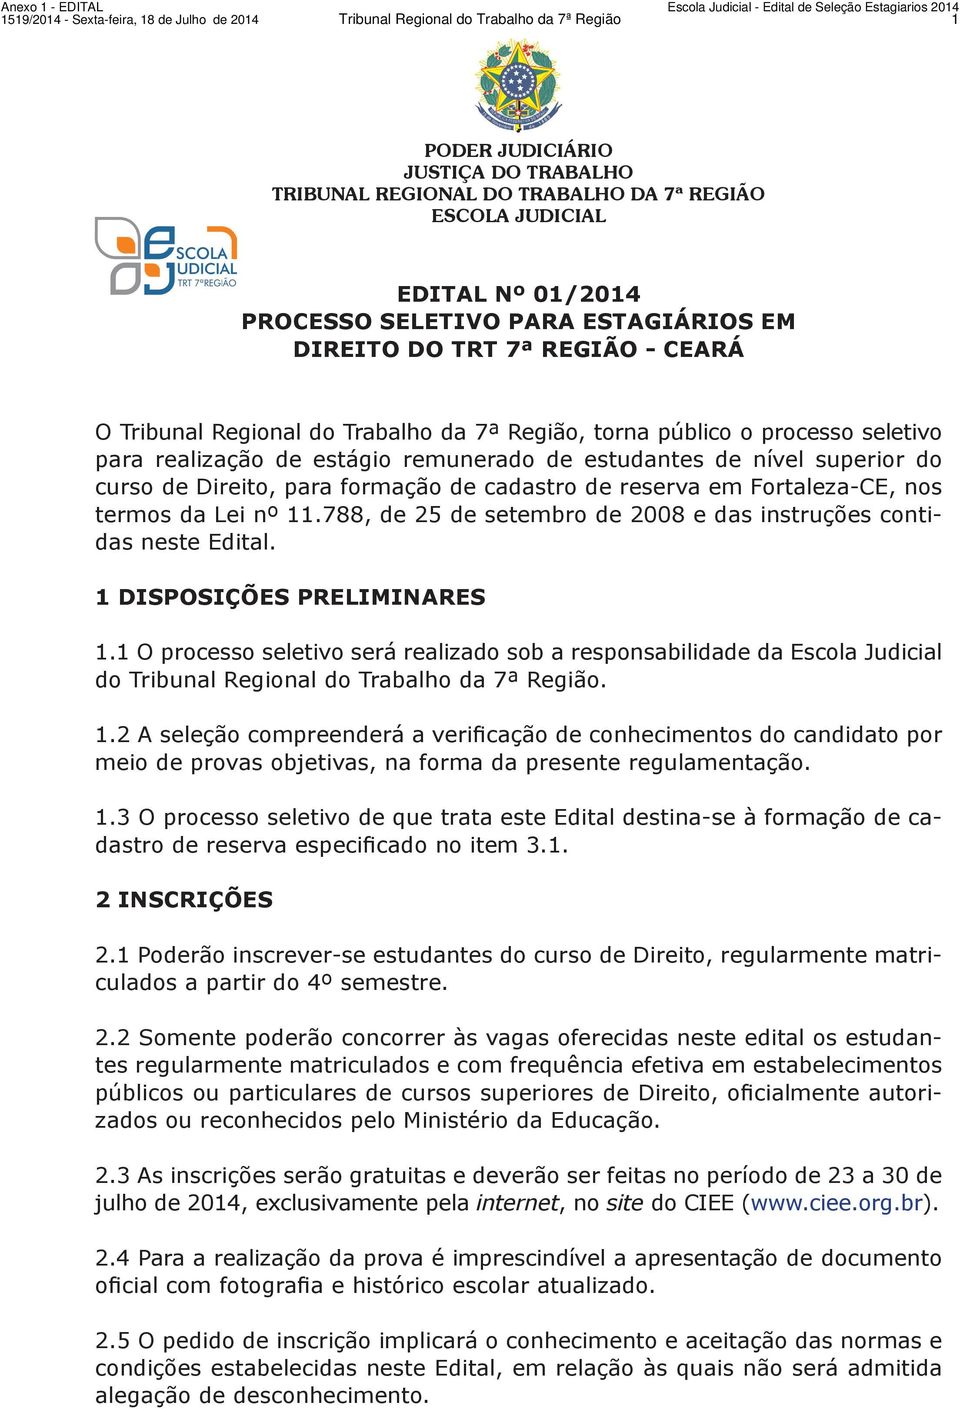 estudantes de nível superior do curso de Direito, para formação de cadastro de reserva em Fortaleza-CE, nos termos da Lei nº 11.788, de 25 de setembro de 2008 e das instruções contidas neste Edital.